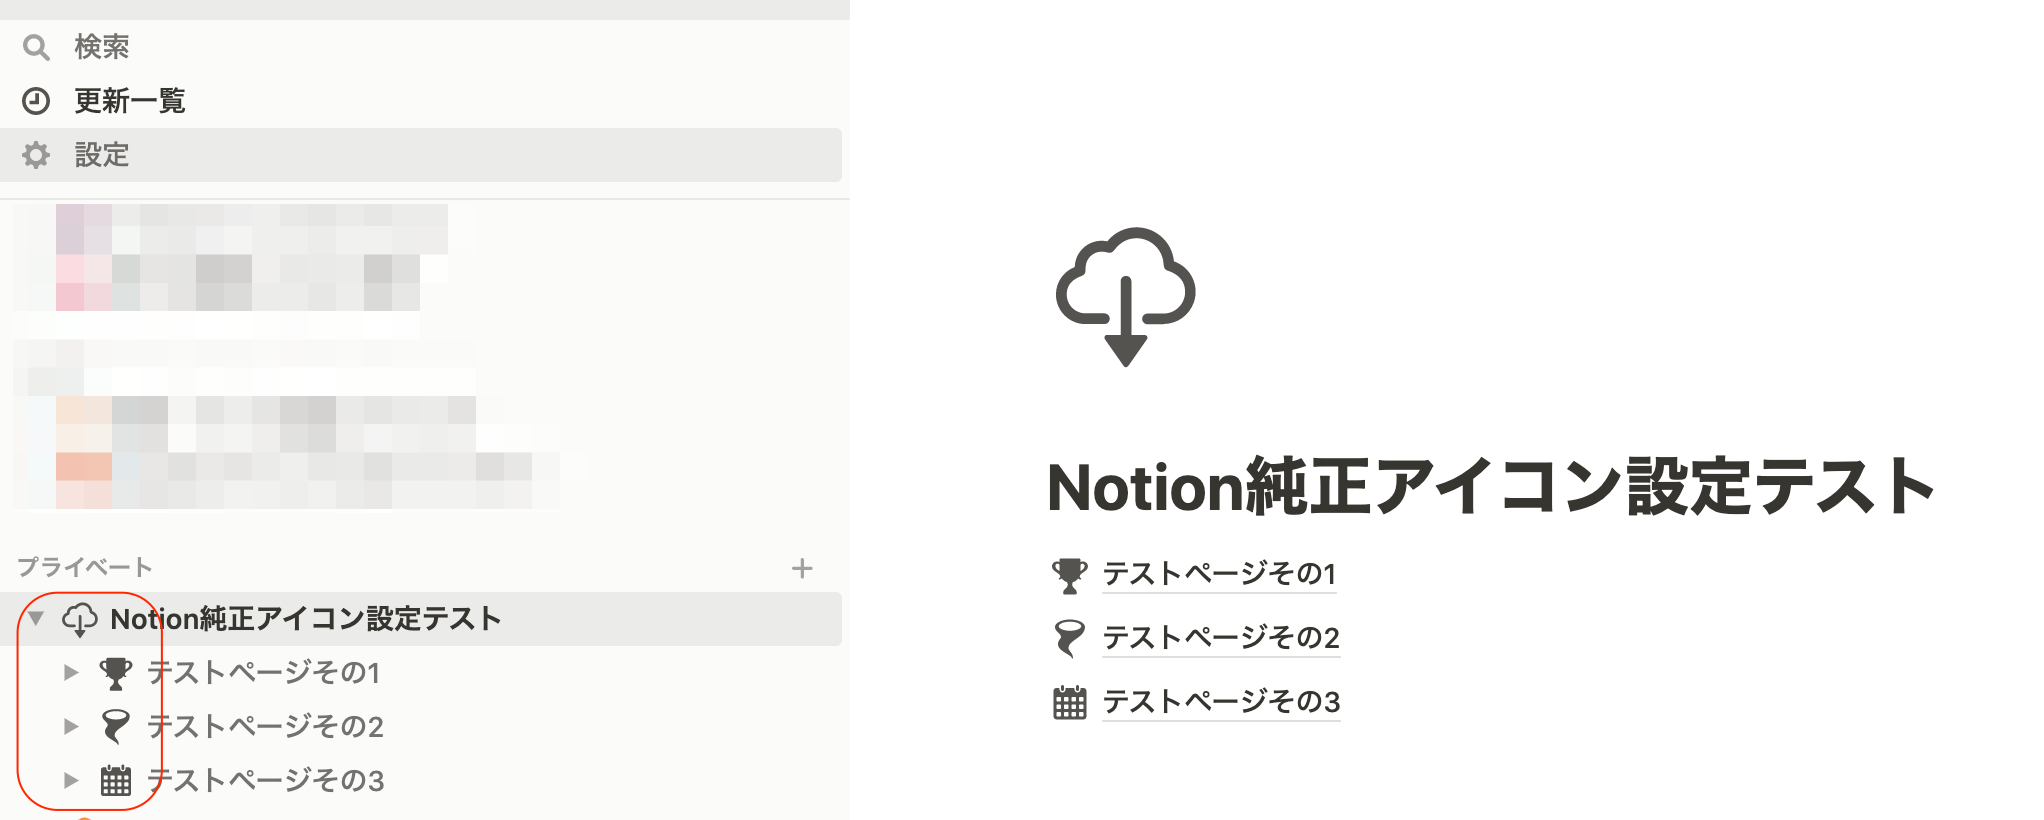 Notionページアイコンに Notion純正アイコン画像 を設定しておくと嬉しいポイントとは Notion Developersio